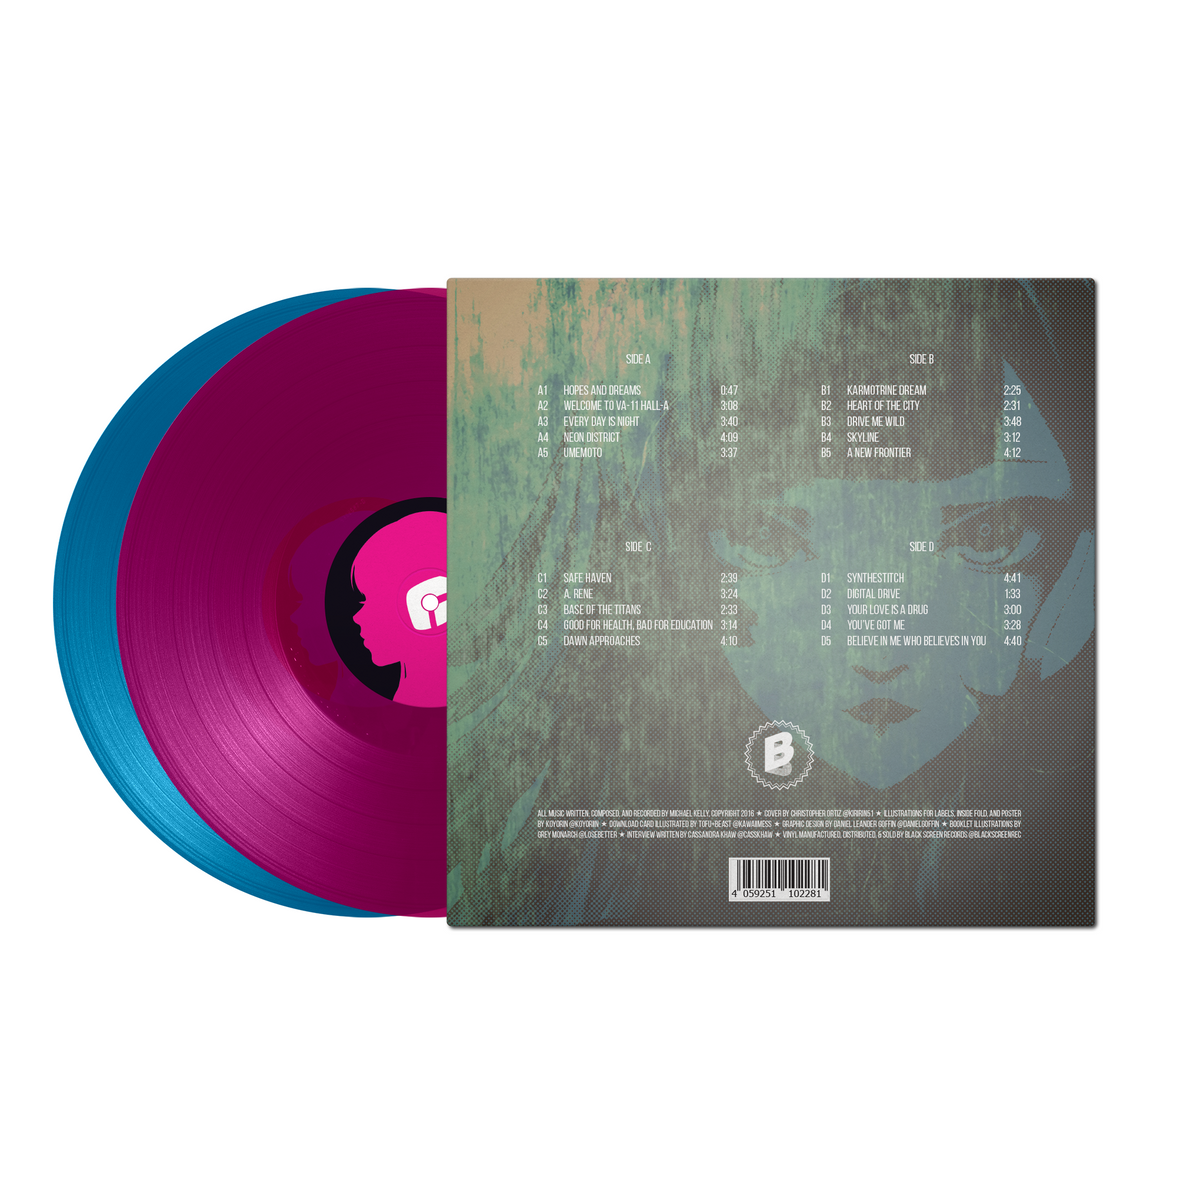 VA-11 HALL-A Soundtrack Vinyl Limited Run Exclusive